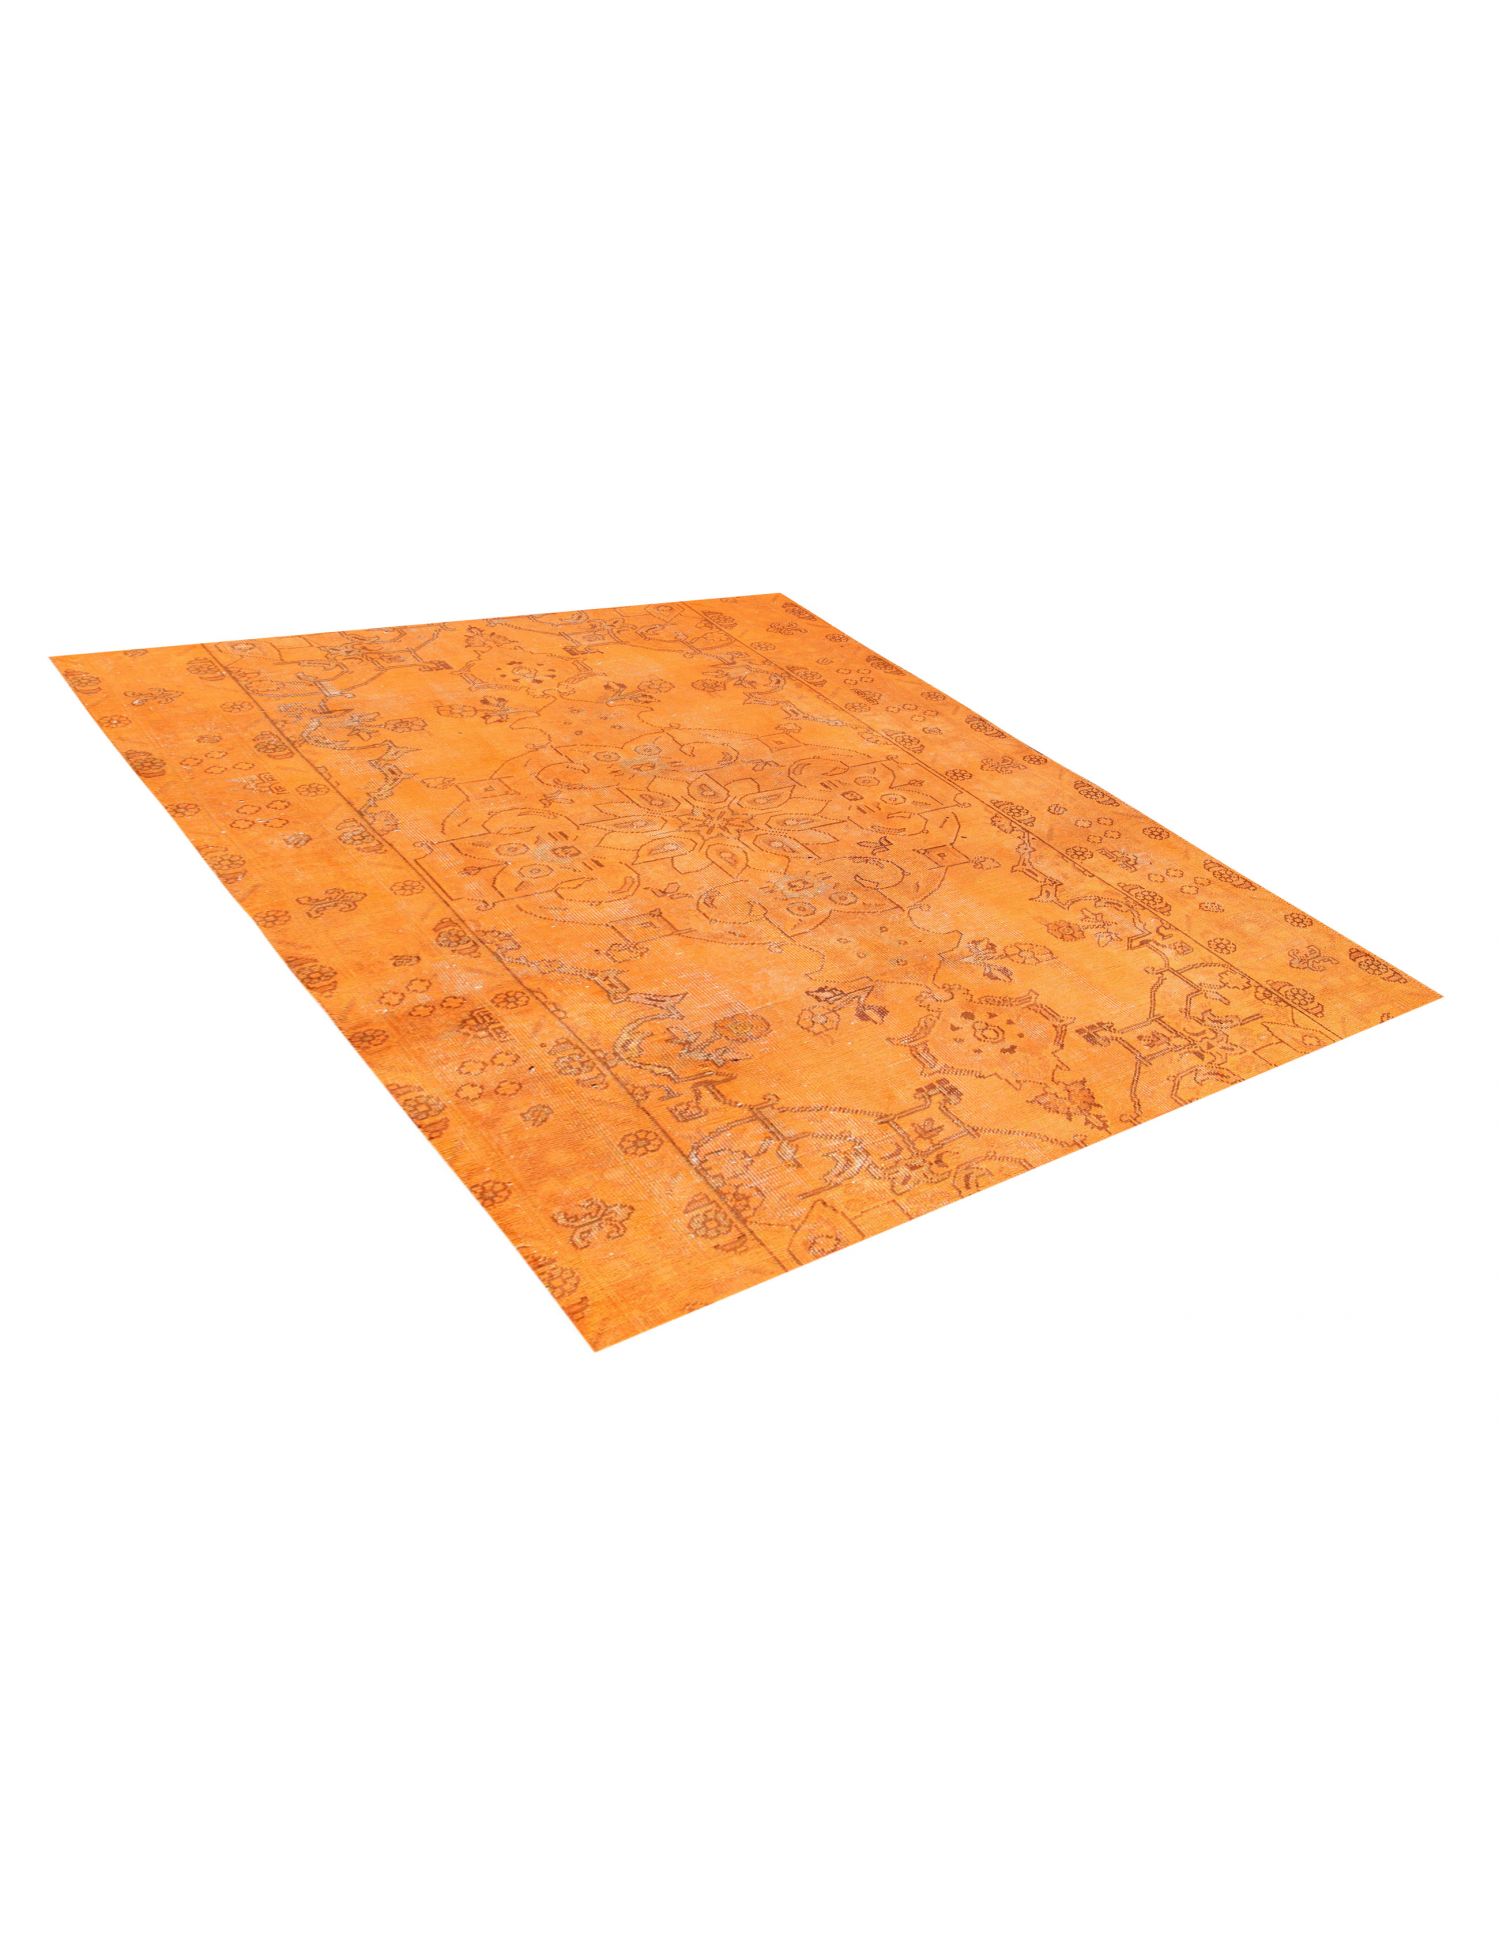 Persialaiset vintage matot  oranssi <br/>180 x 180 cm